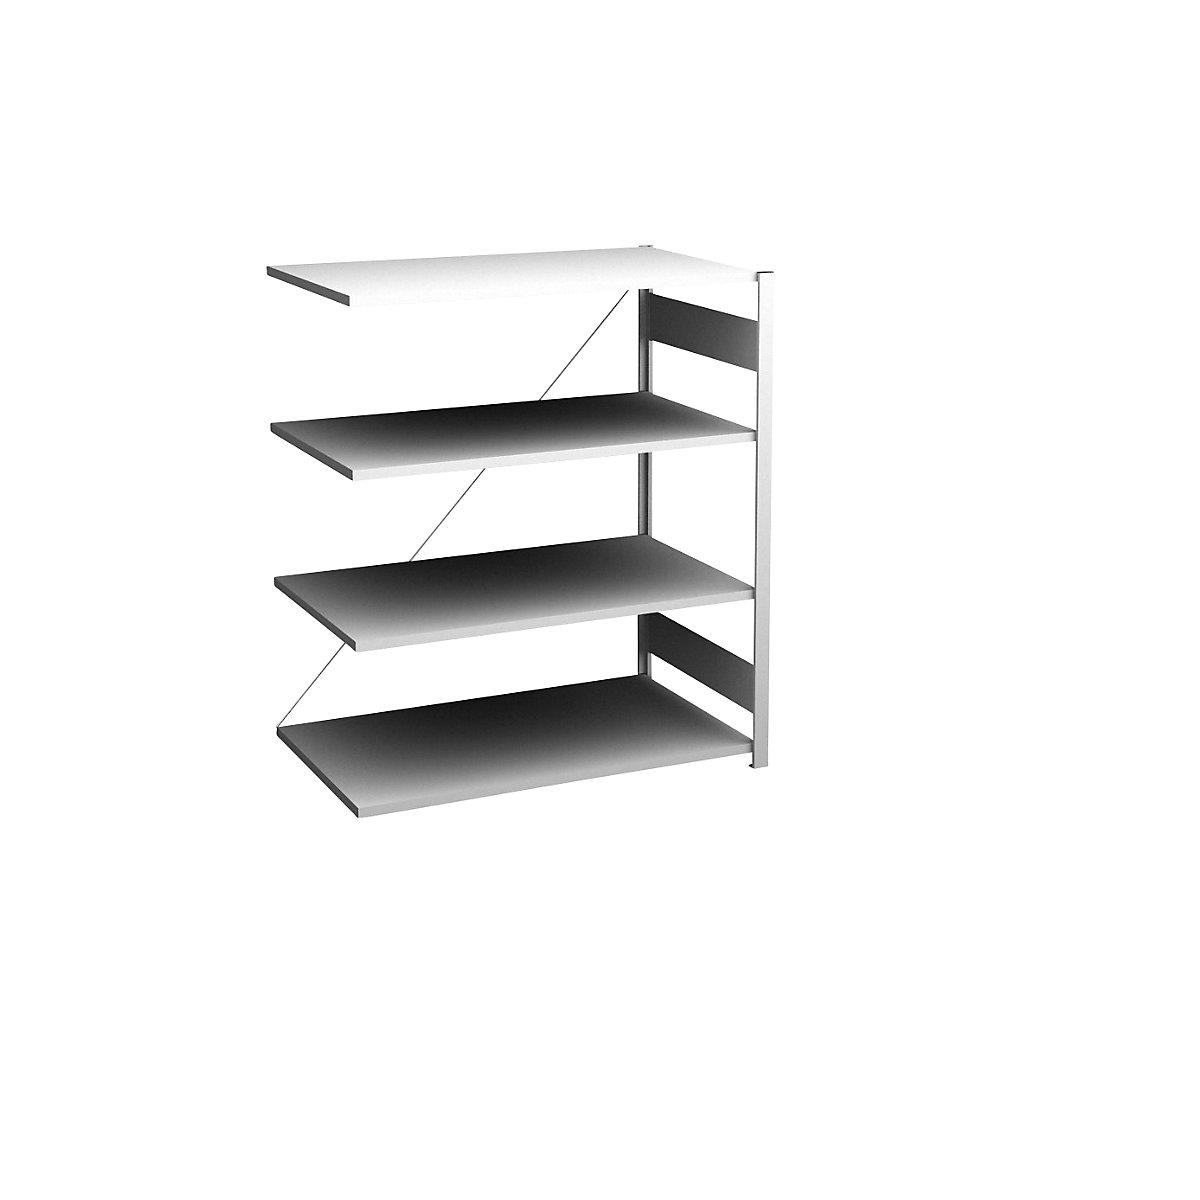 Sideboard shelving unit, light grey – hofe, height 1200 mm, 4 shelves, extension shelf unit, shelf depth 600 mm, max. shelf load 140 kg-8